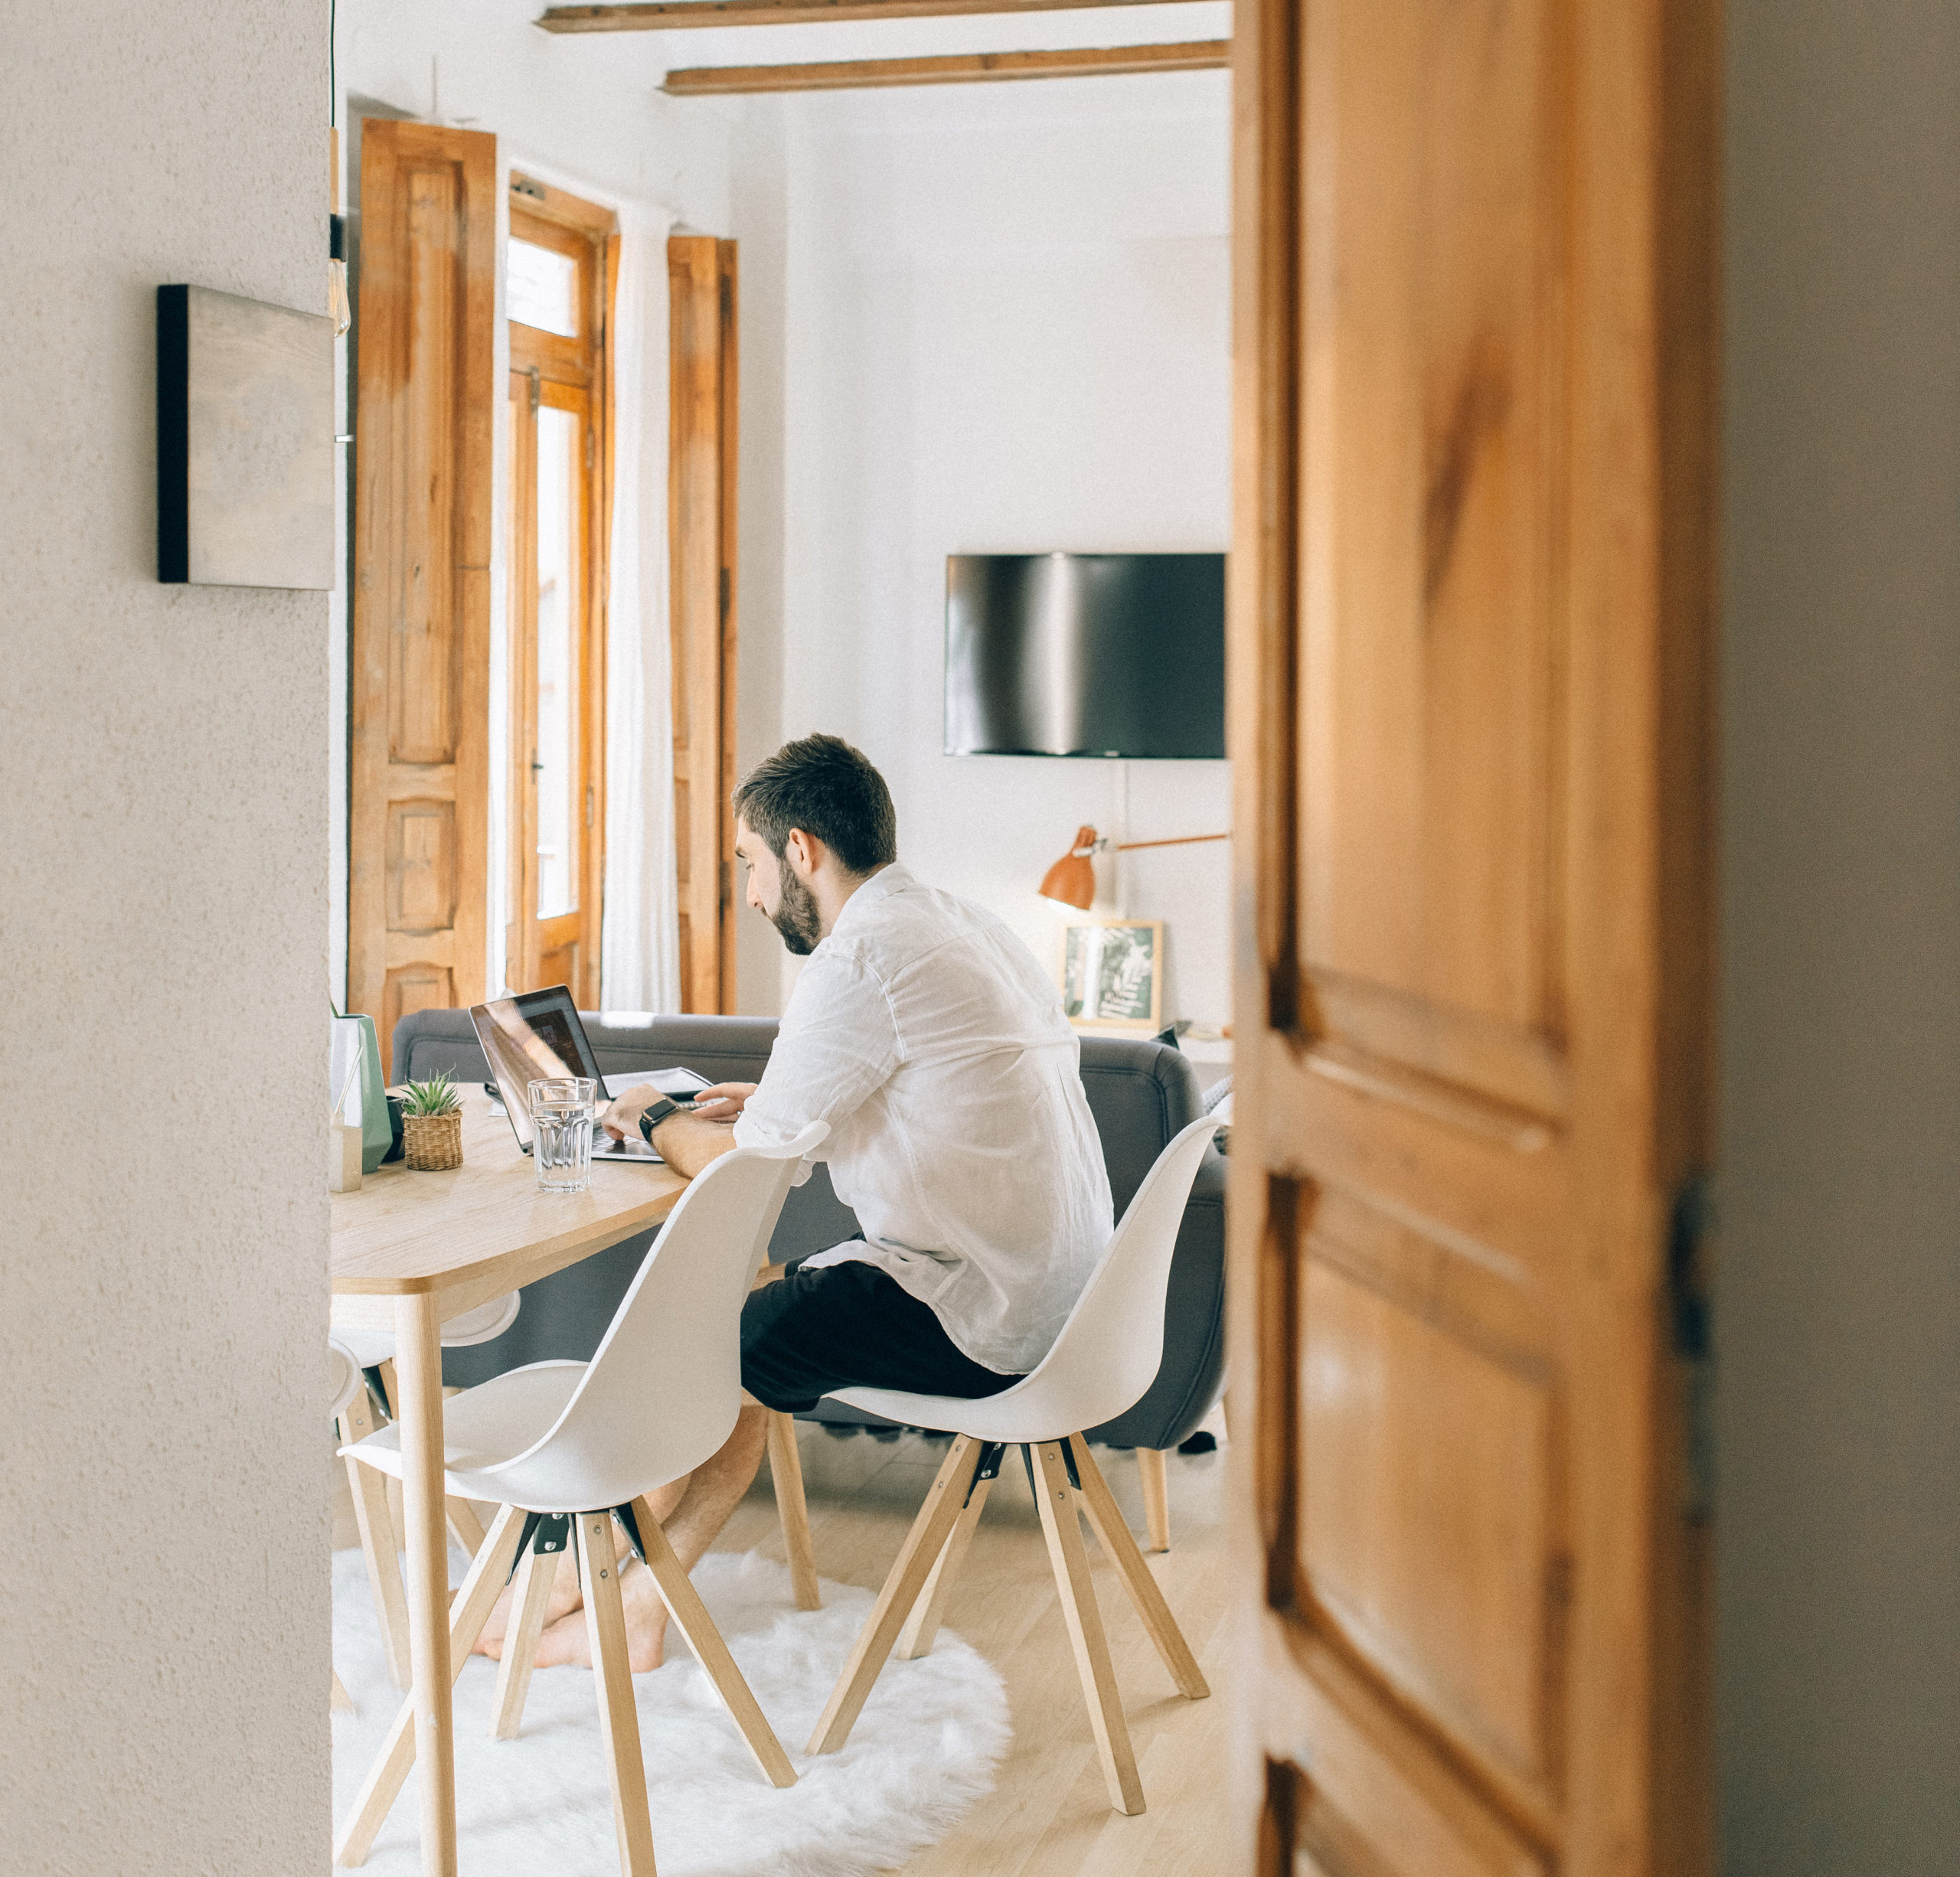 Durch eine Tür sieht man einen Mann mit seinem Laptop am Esstisch arbeiten. Mitarbeiter überwachen im Home Office ist aktuell ein Thema. Bild: Pexels / Nataliya Vaitkevich